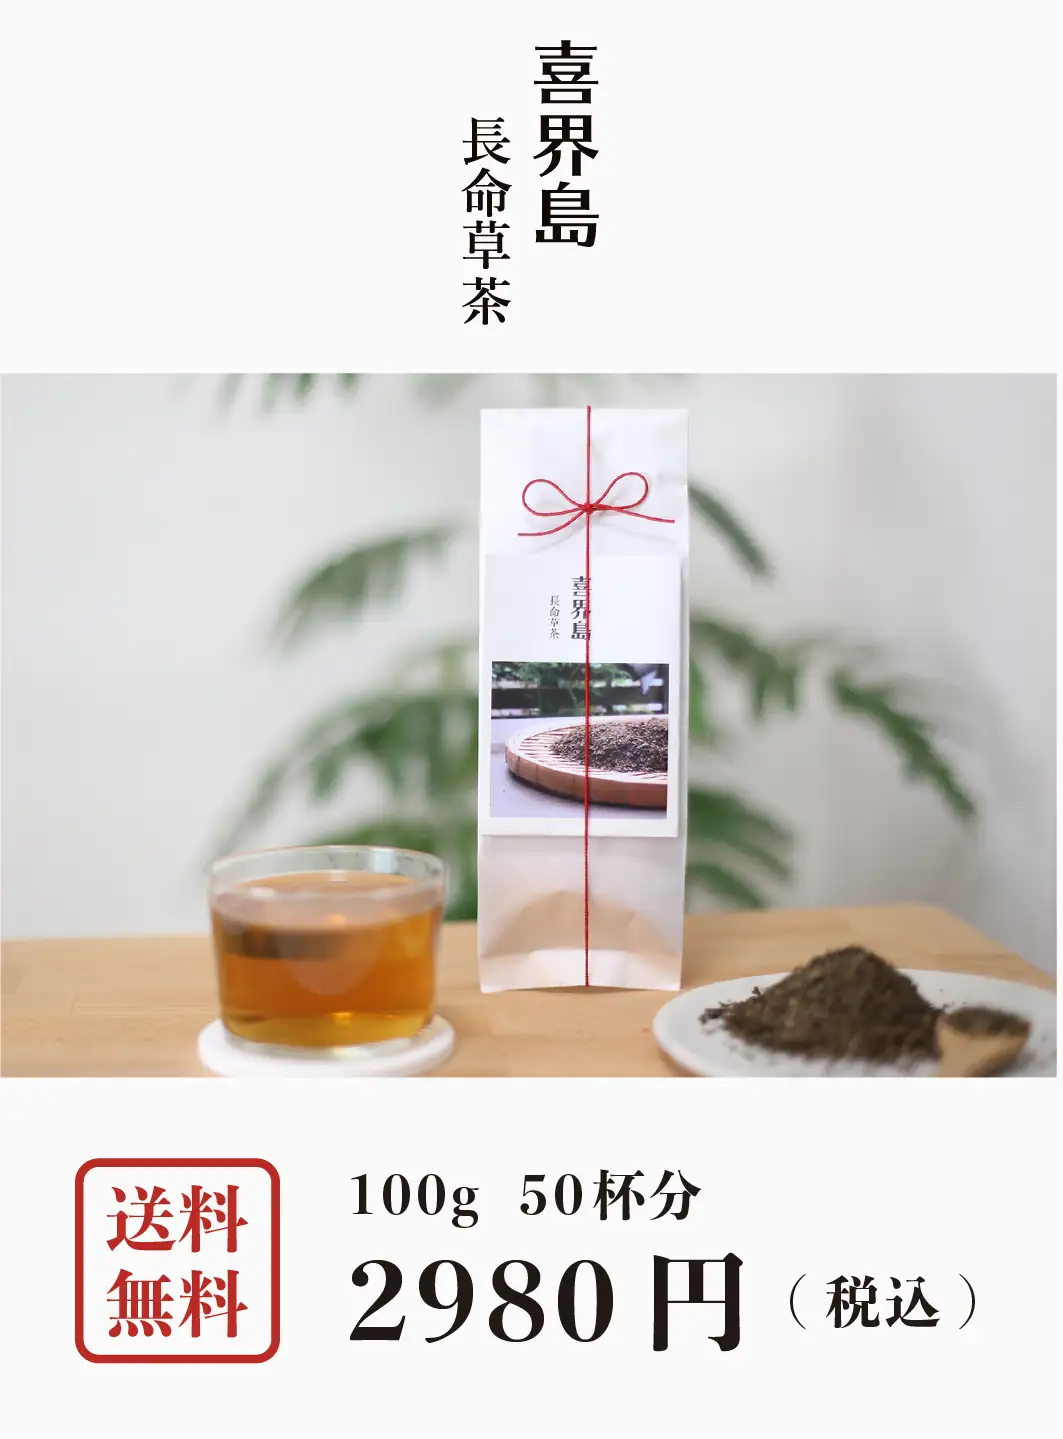 機能性表示食品　喜界島 長命草茶 100g (50杯分)